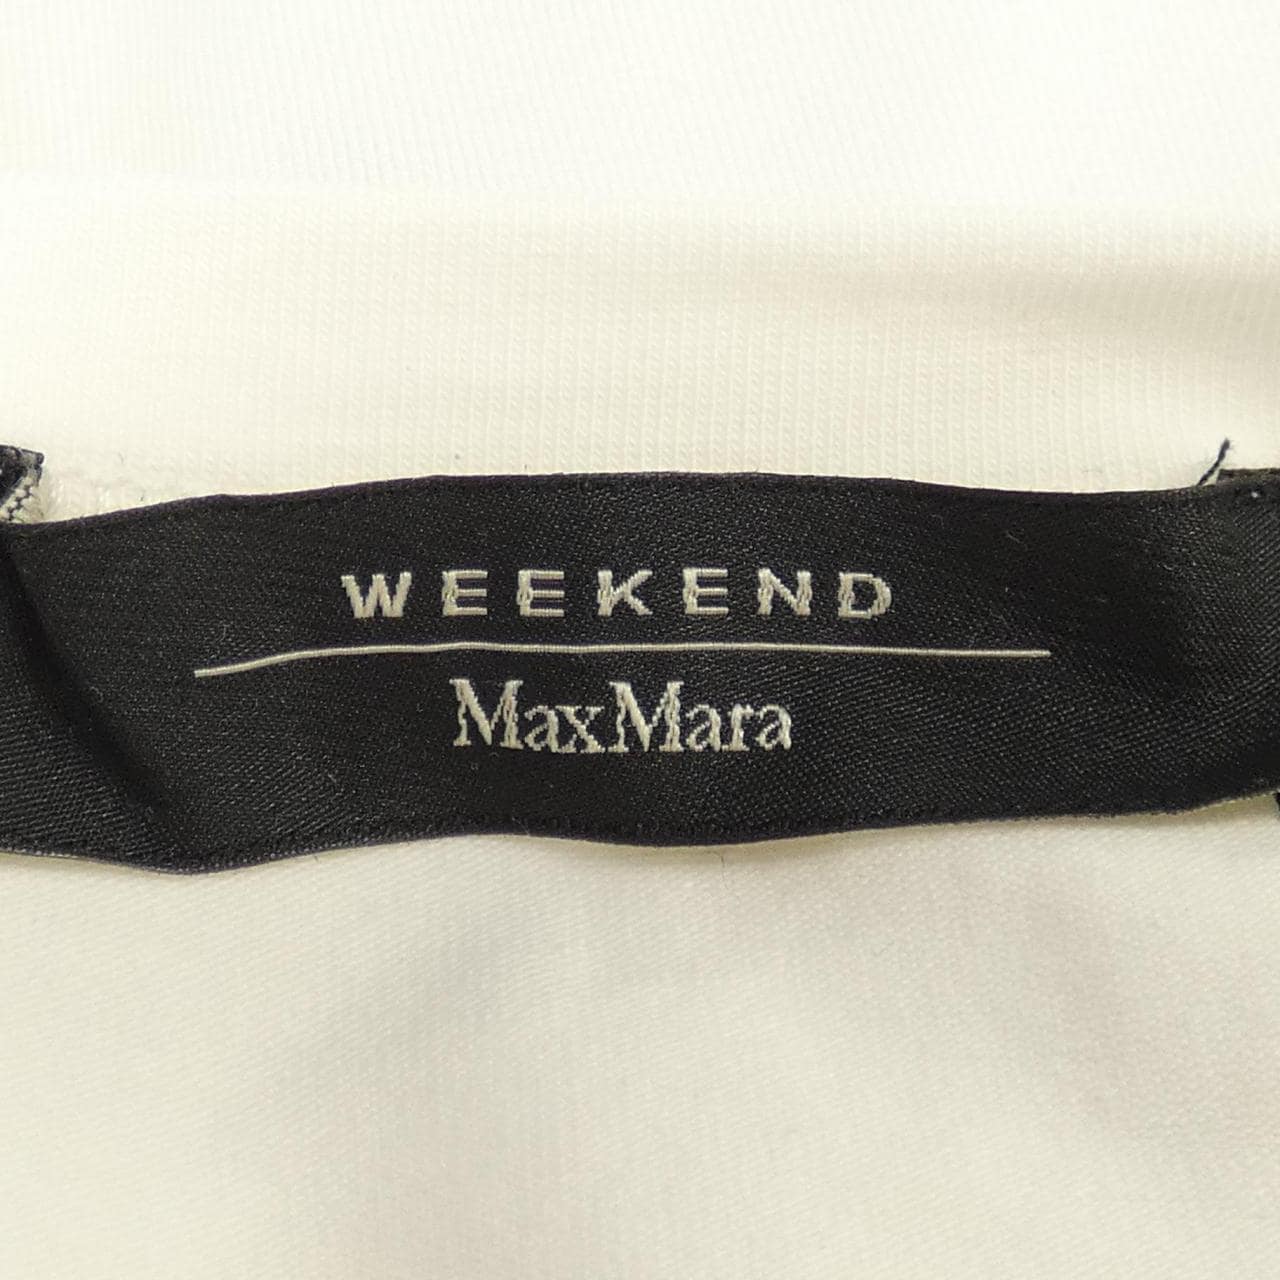 マックスマーラウィークエンド Max Mara weekend Tシャツ